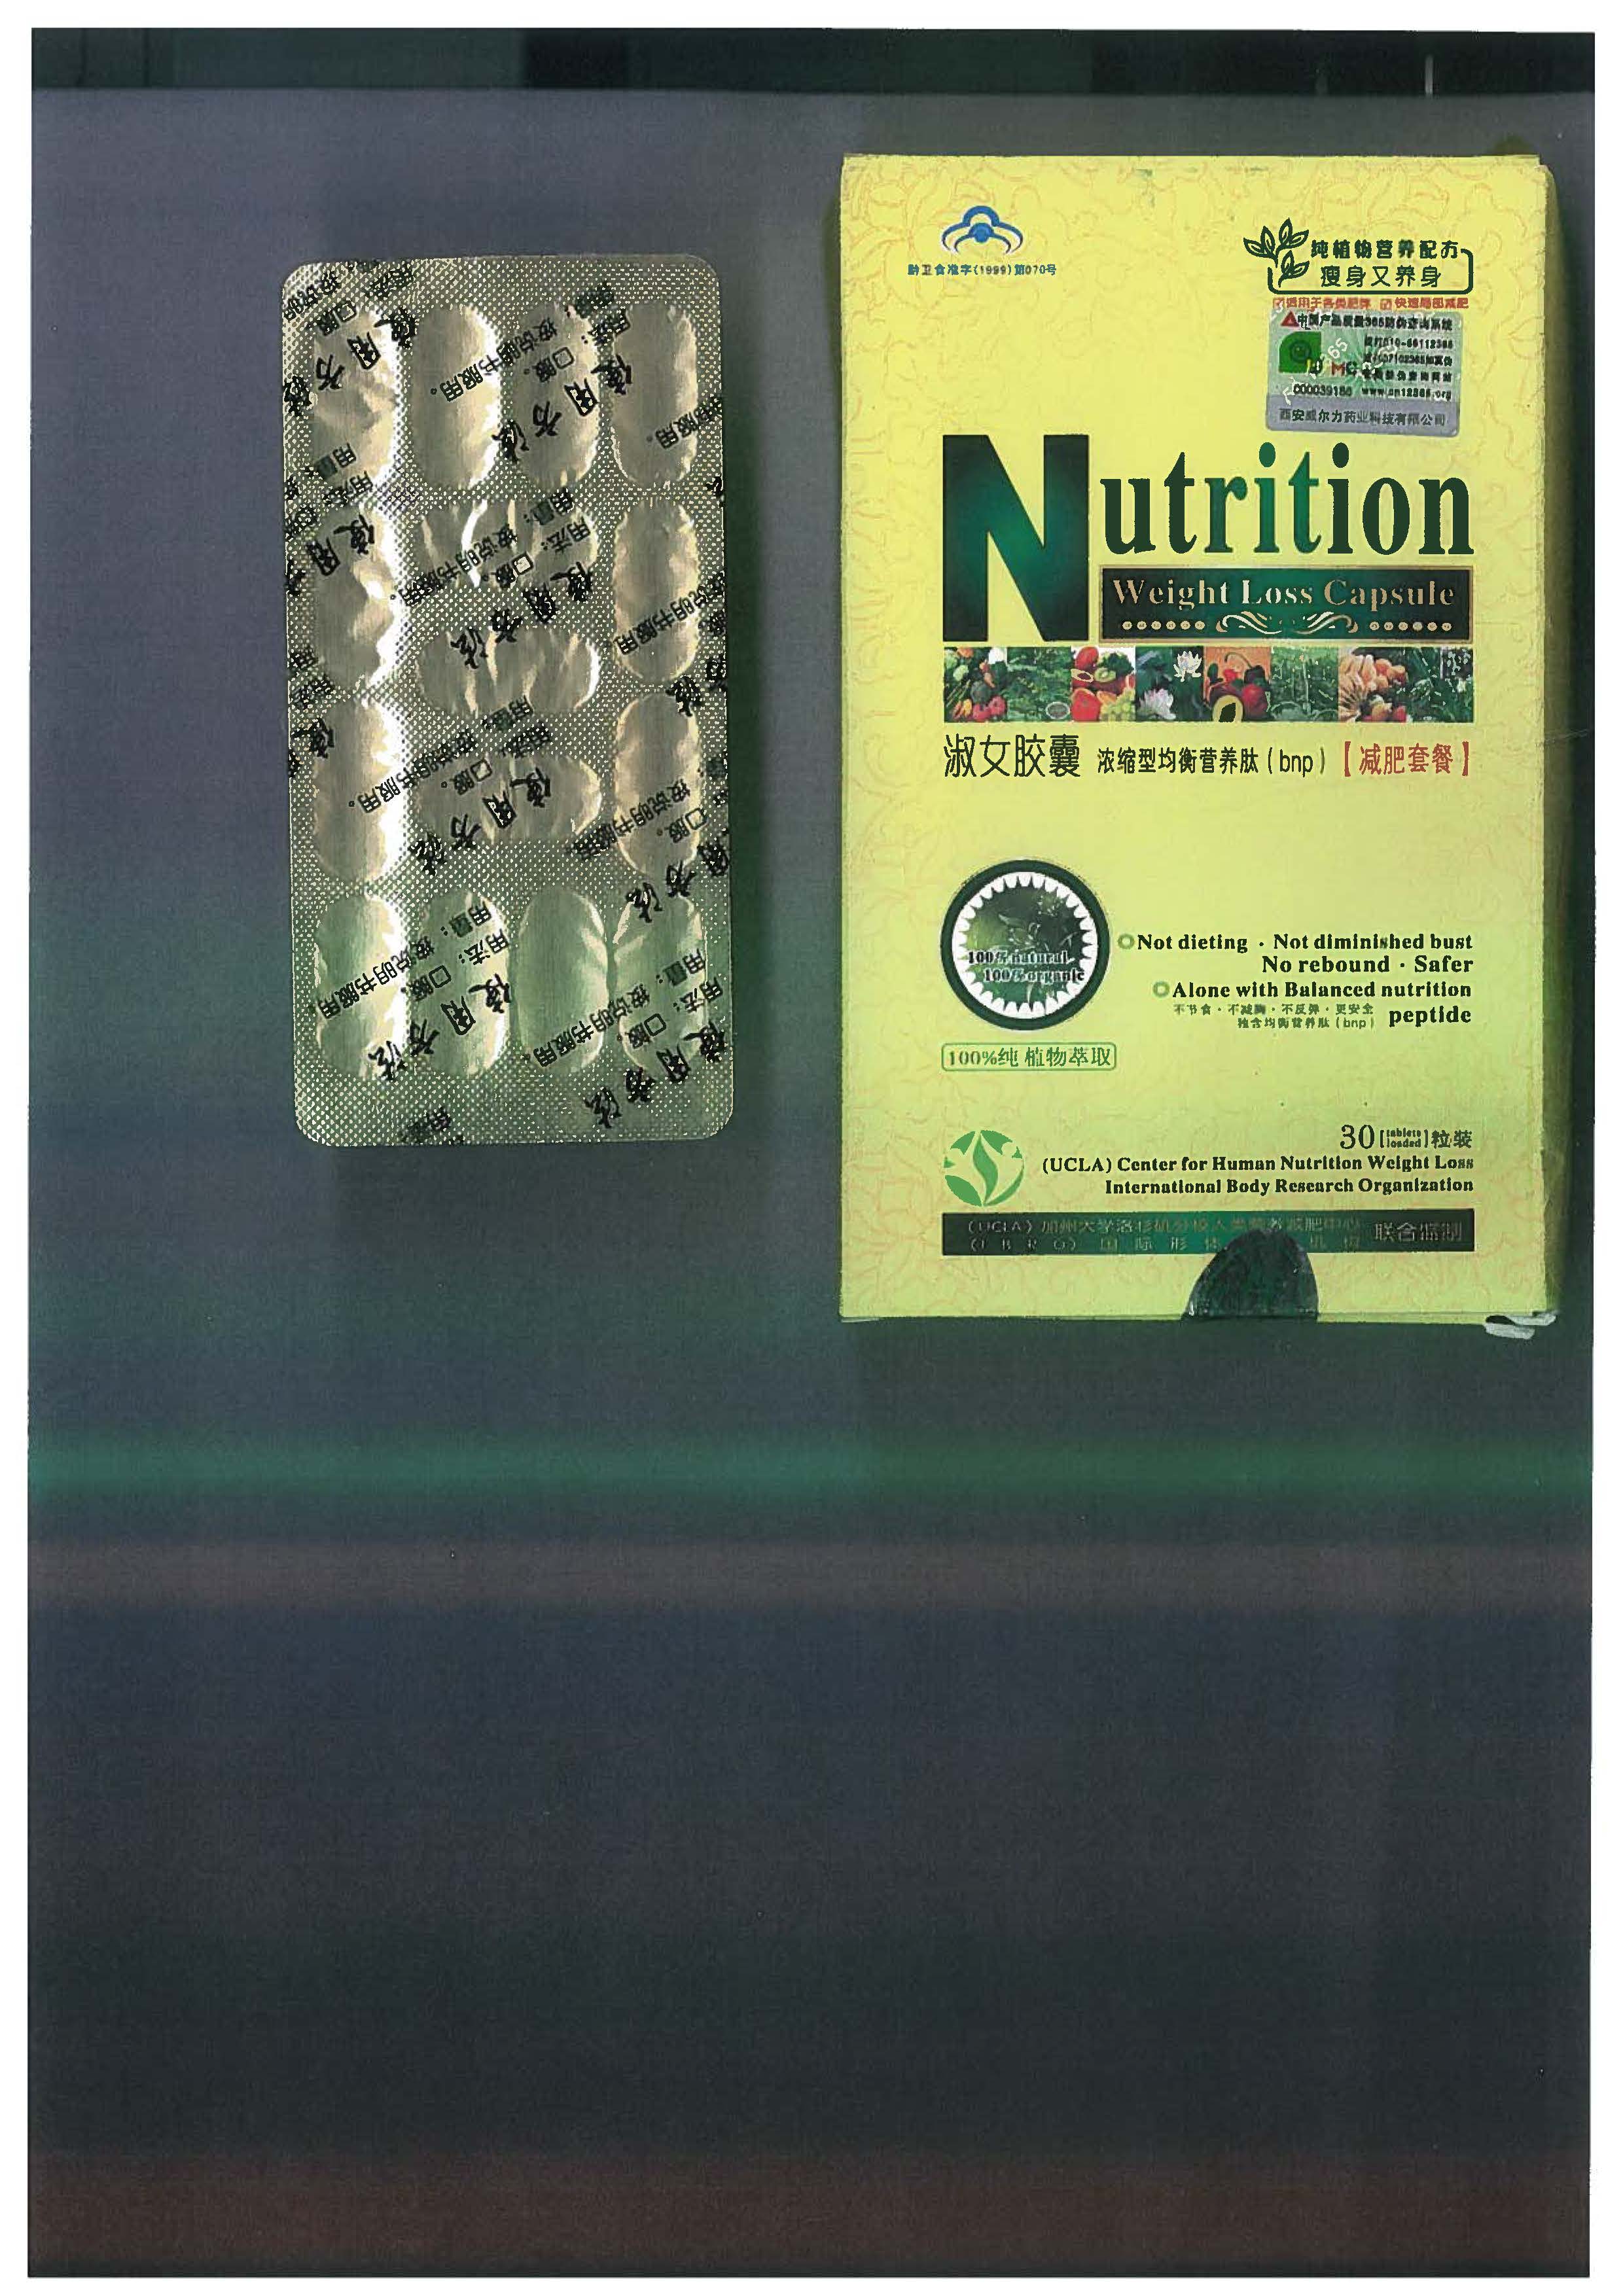 Billede af det ulovlige produkt: Nutrition (Weight Loss Caps)